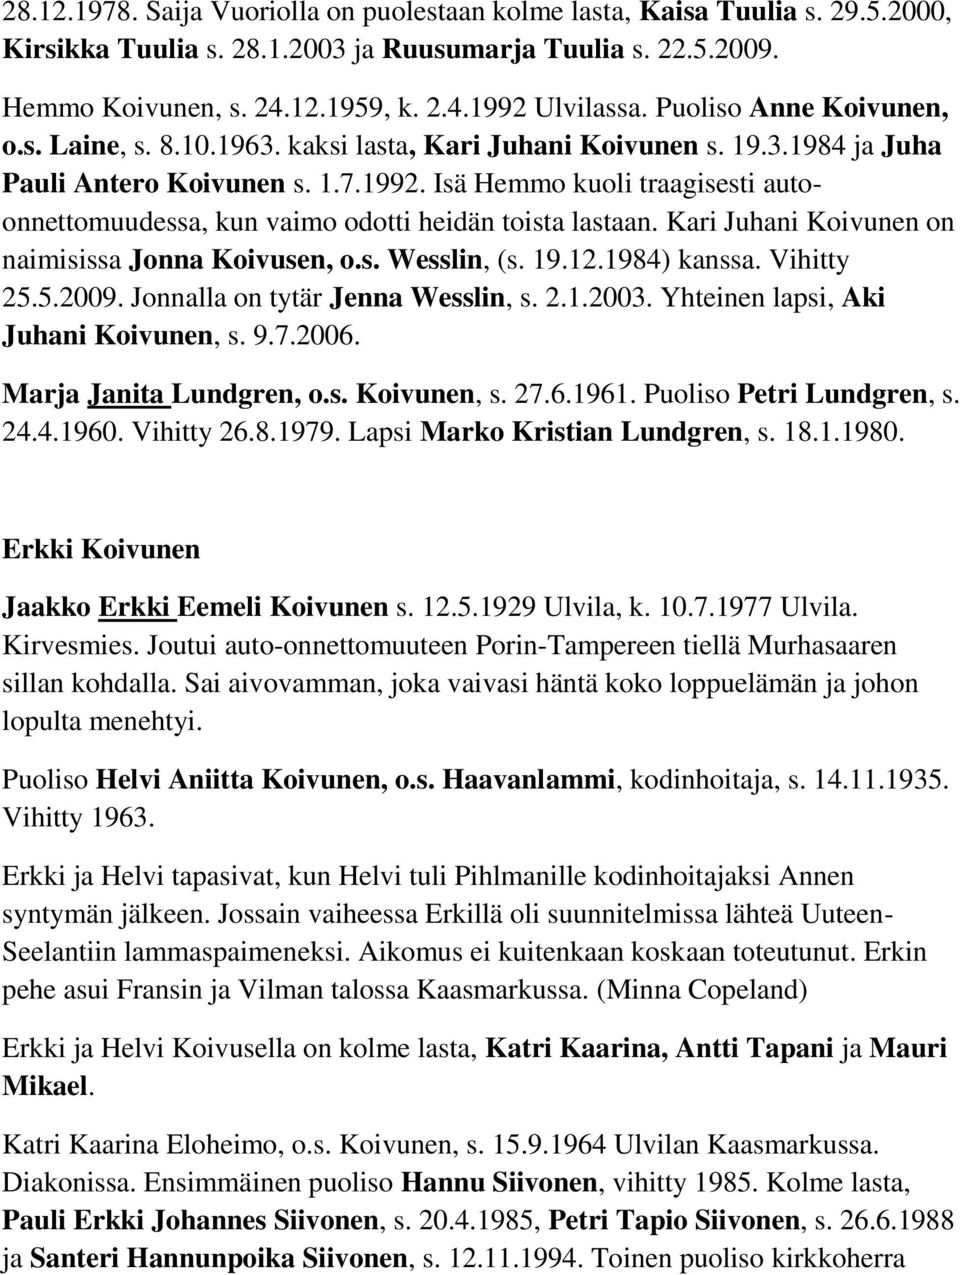 Isä Hemmo kuoli traagisesti autoonnettomuudessa, kun vaimo odotti heidän toista lastaan. Kari Juhani Koivunen on naimisissa Jonna Koivusen, o.s. Wesslin, (s. 19.12.1984) kanssa. Vihitty 25.5.2009.